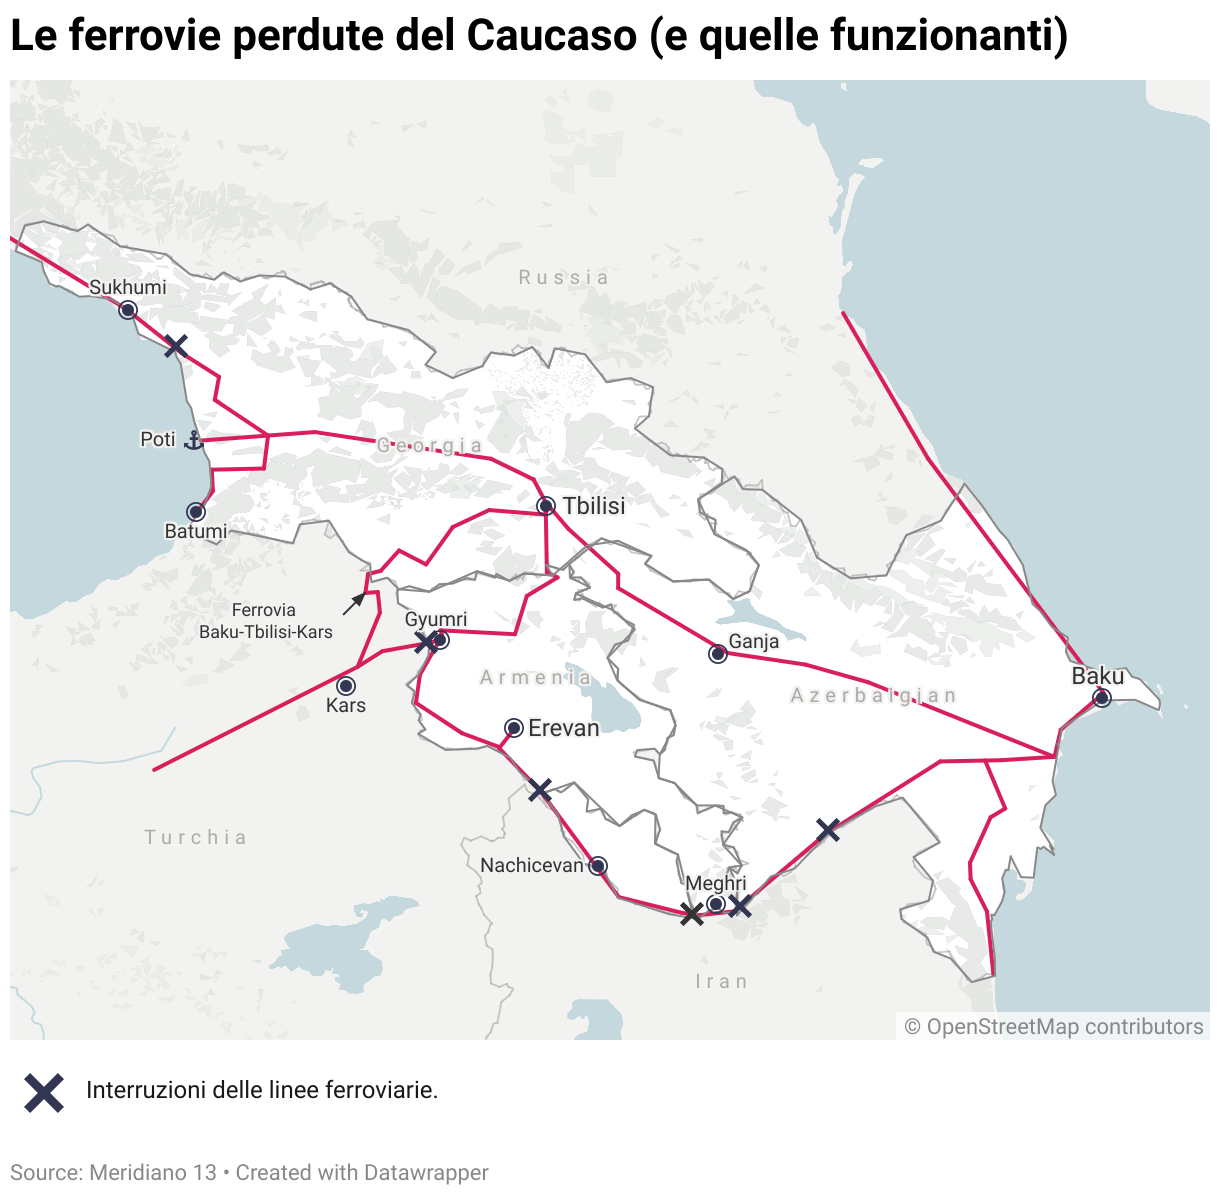 Le ferrovie perdute del Caucaso meridionale e quelle funzionanti.